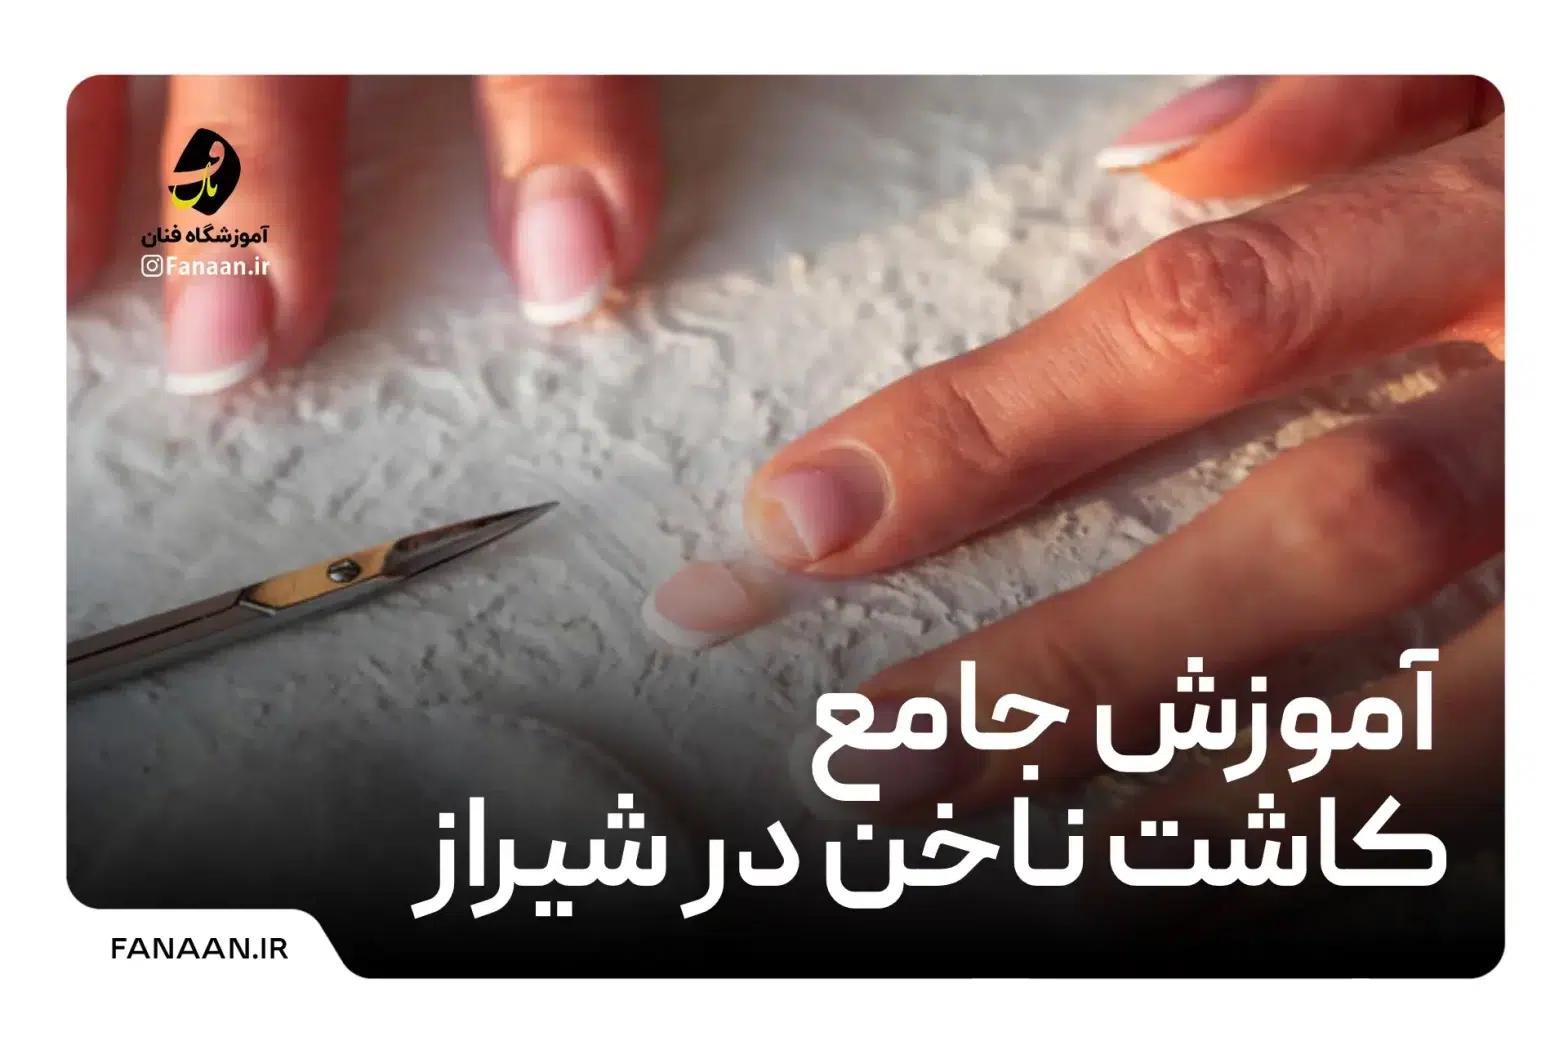 آموزش کاشت ناخن در شیراز